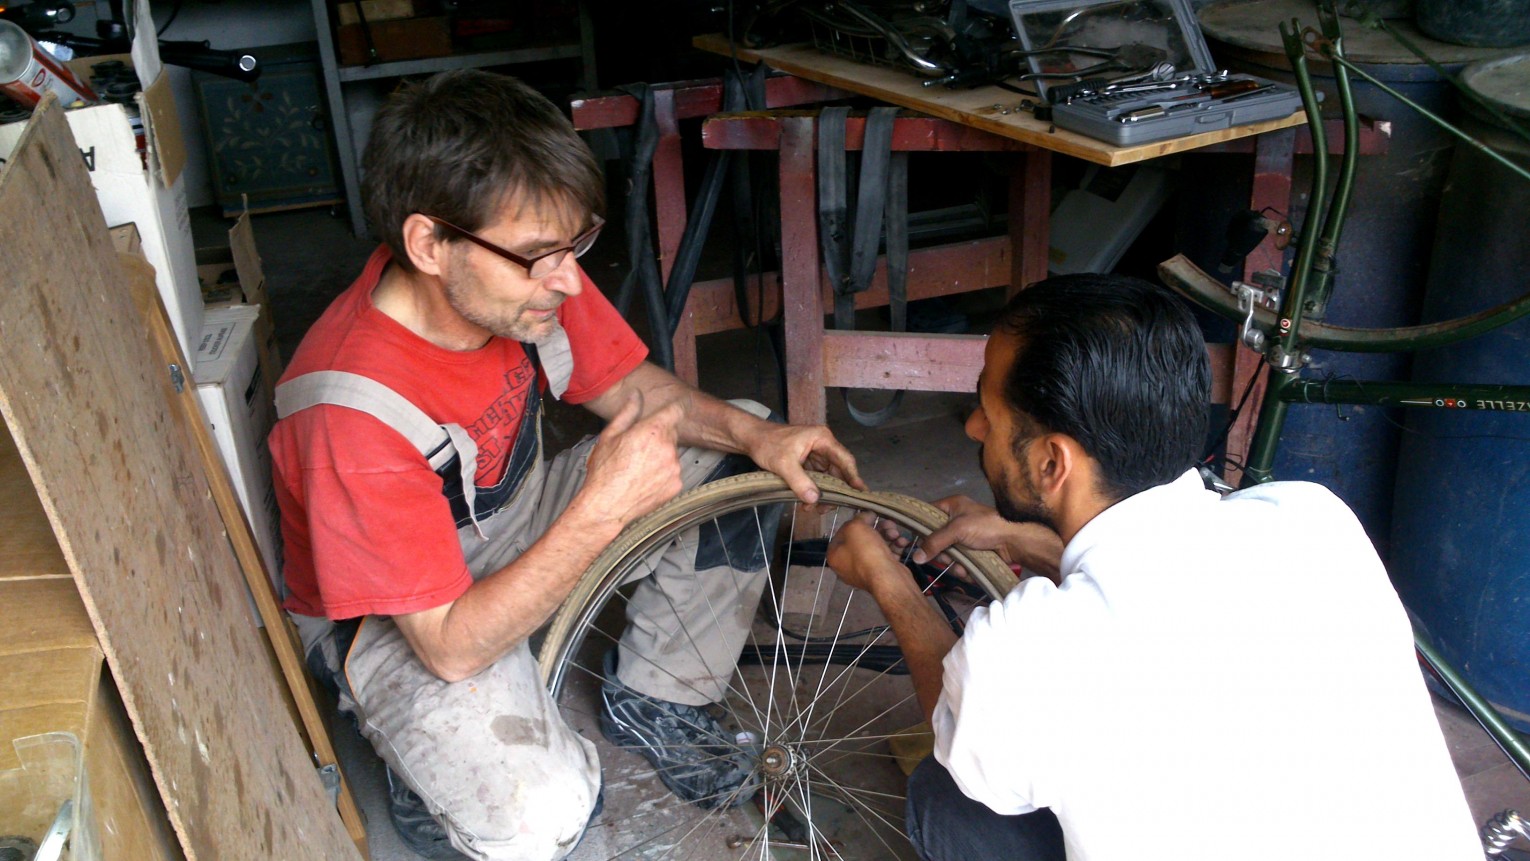 Mann in Handwerkerkleidung und Mann aus Syrien beim Fahrradreifen reparieren.